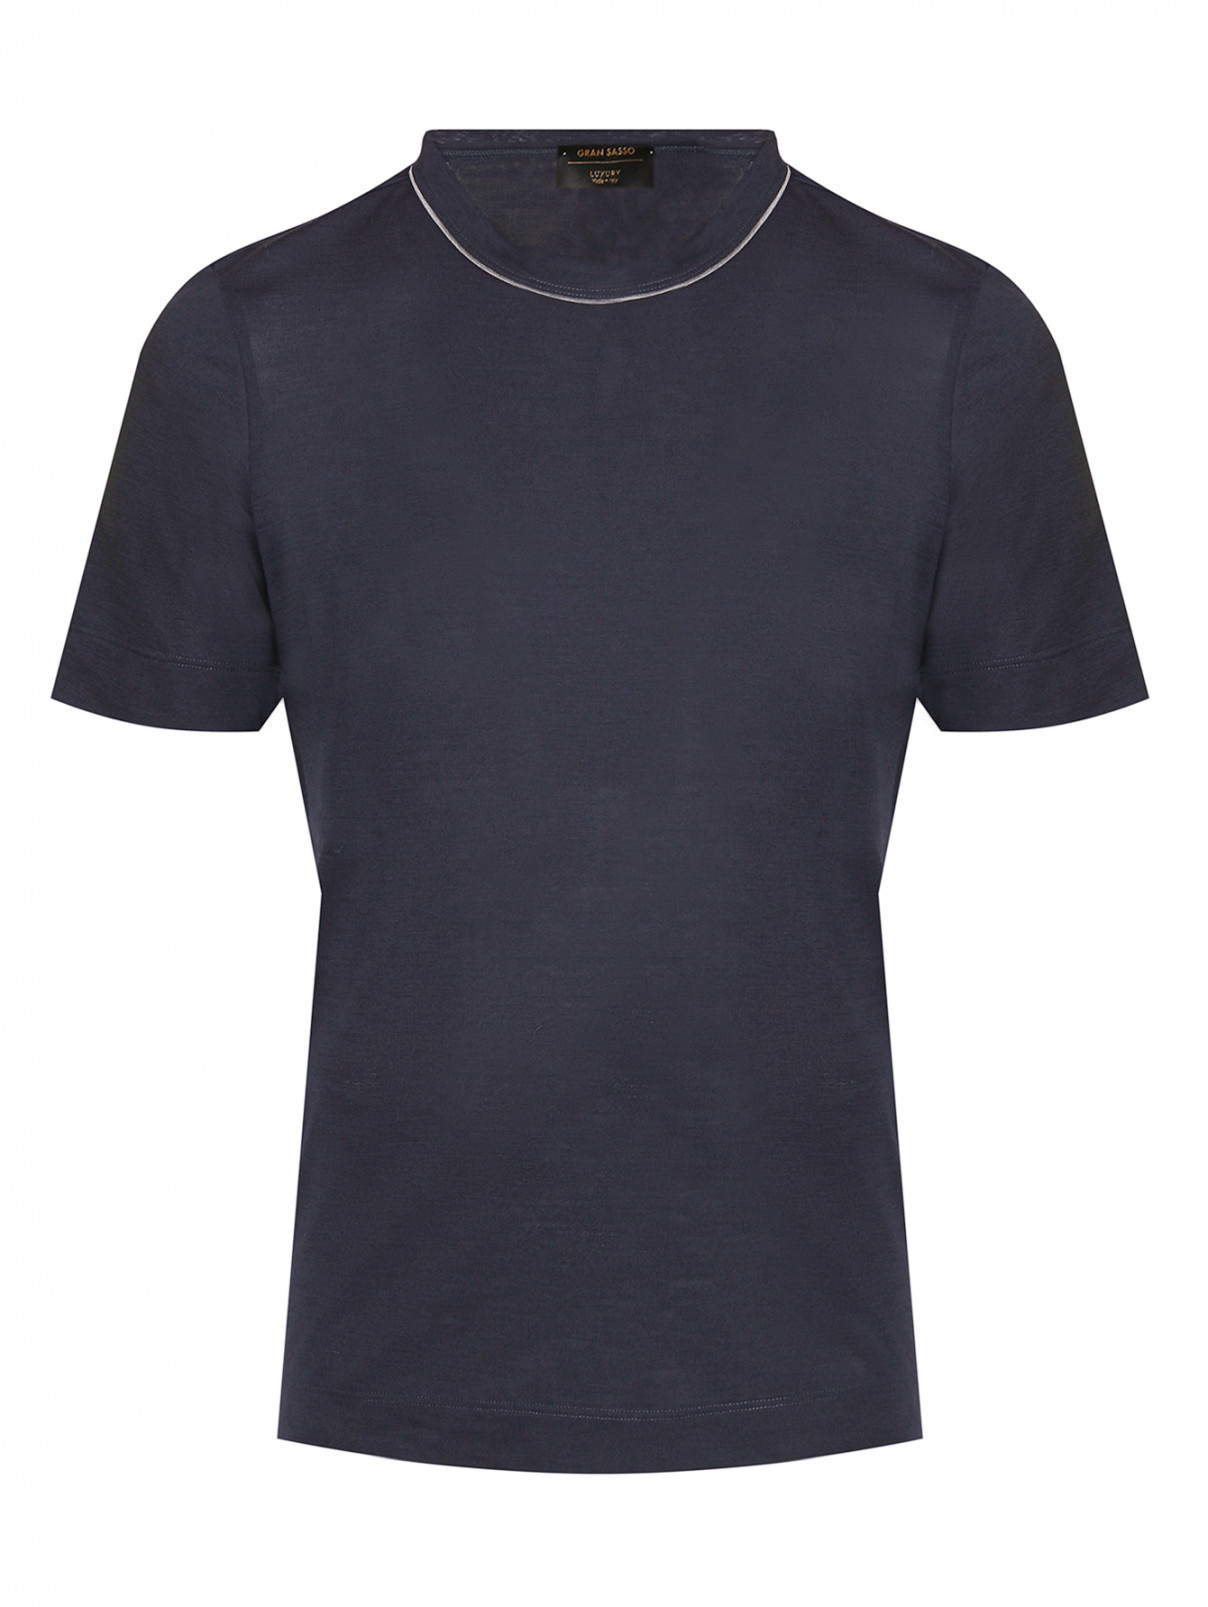 Однотонная футболка из шерсти Gran Sasso  –  Общий вид  – Цвет:  Синий